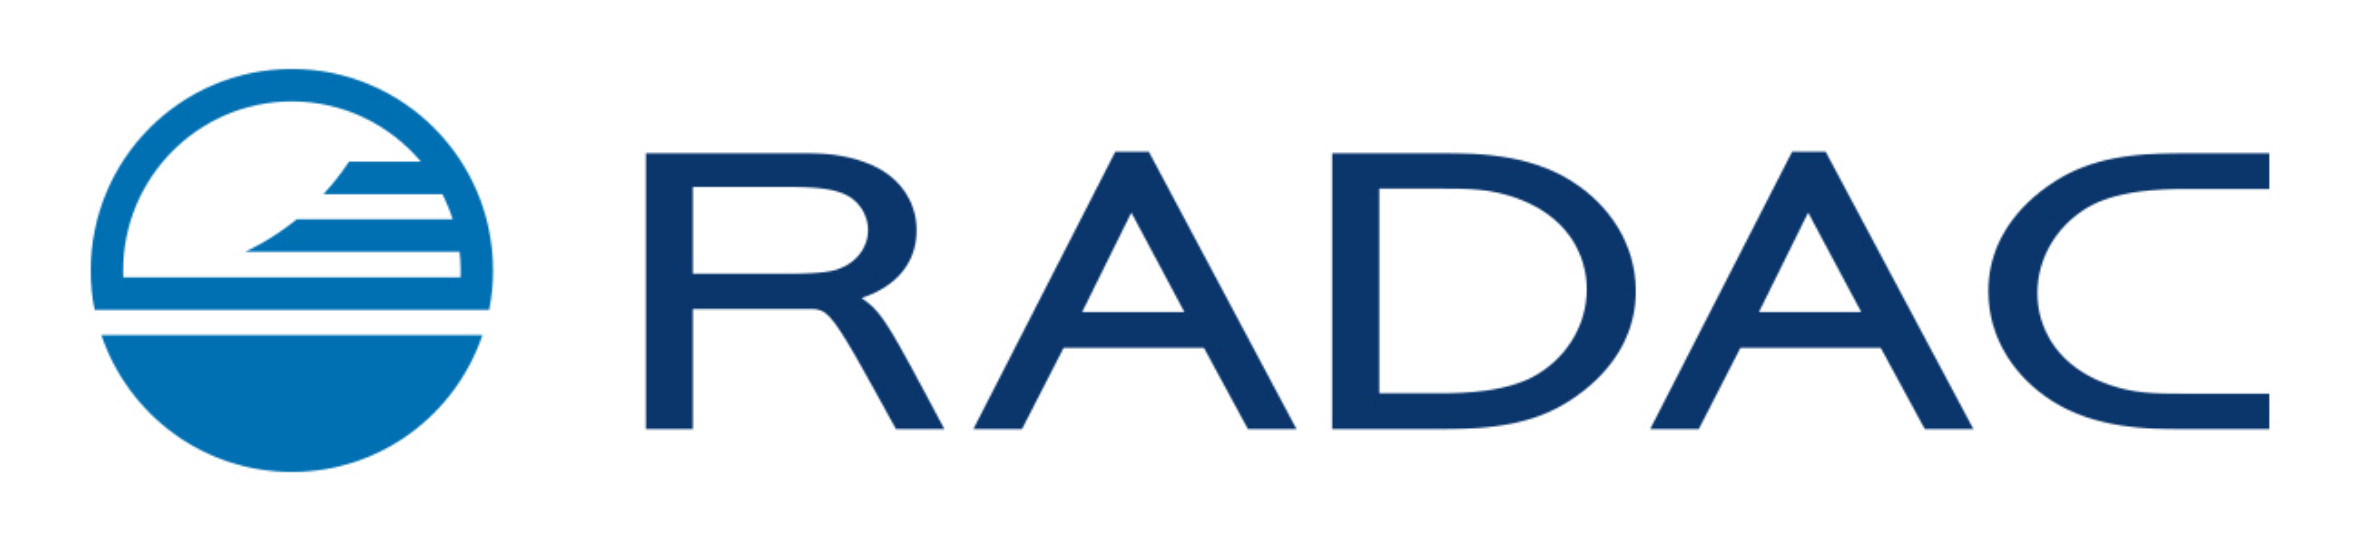 radac-logo-2014-rgb1300px.jpg